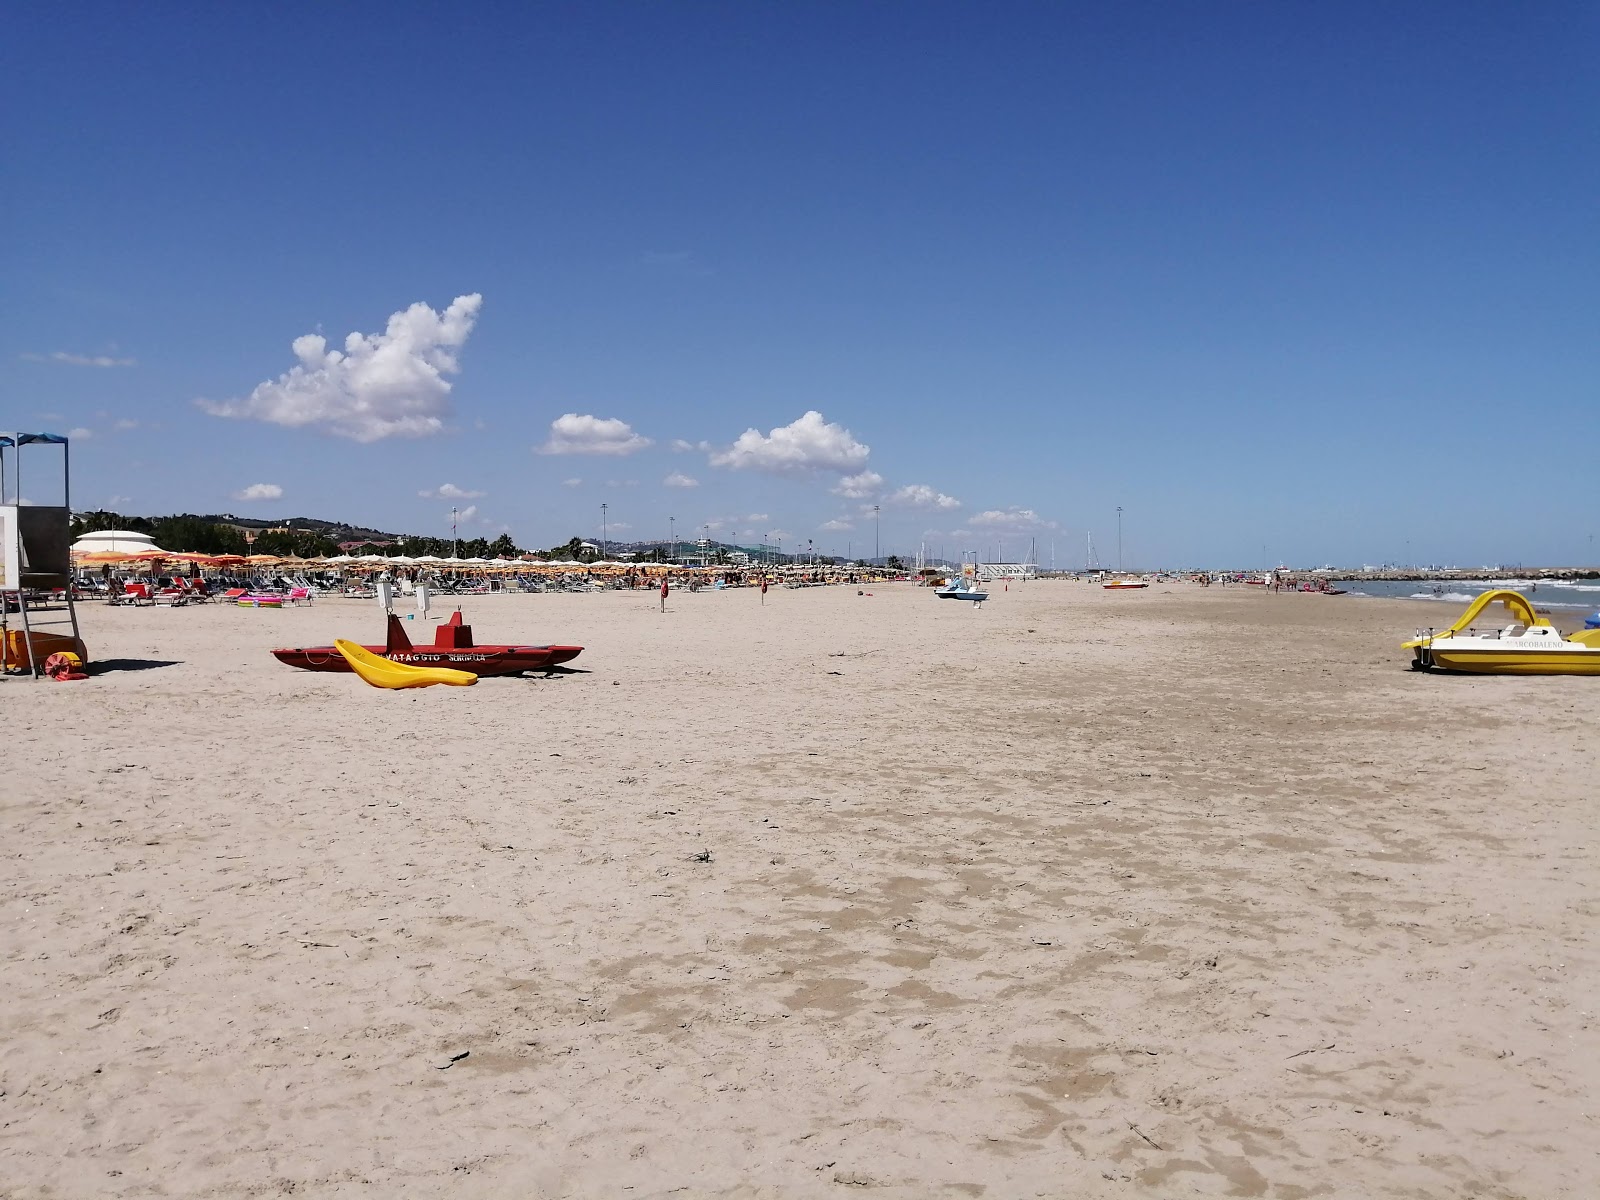 Fotografie cu Giulianova beach cu plajă spațioasă